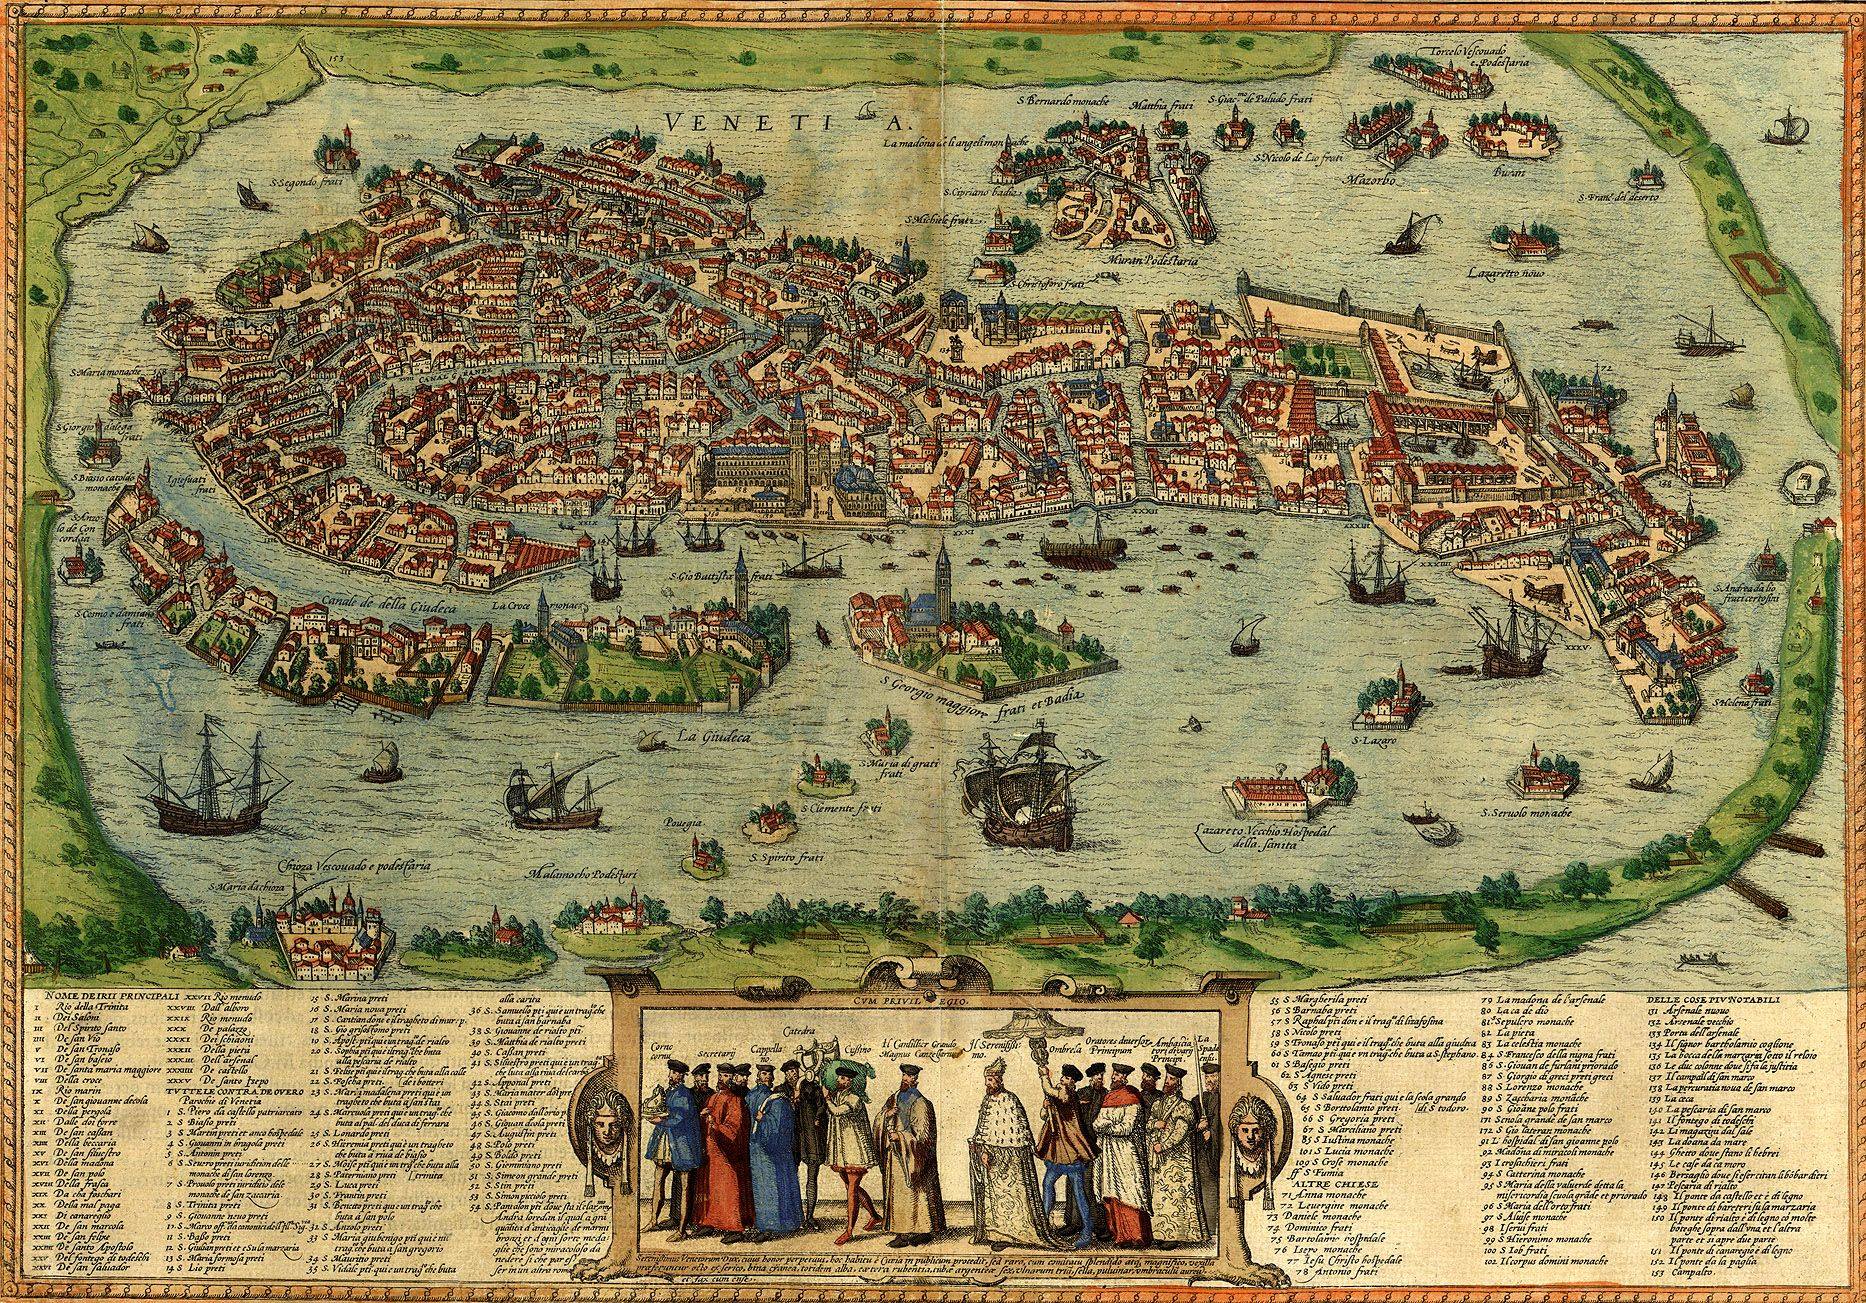 Перспективный план Венеции из первого тома Атласа городов мира Брауна и Хогенберга.